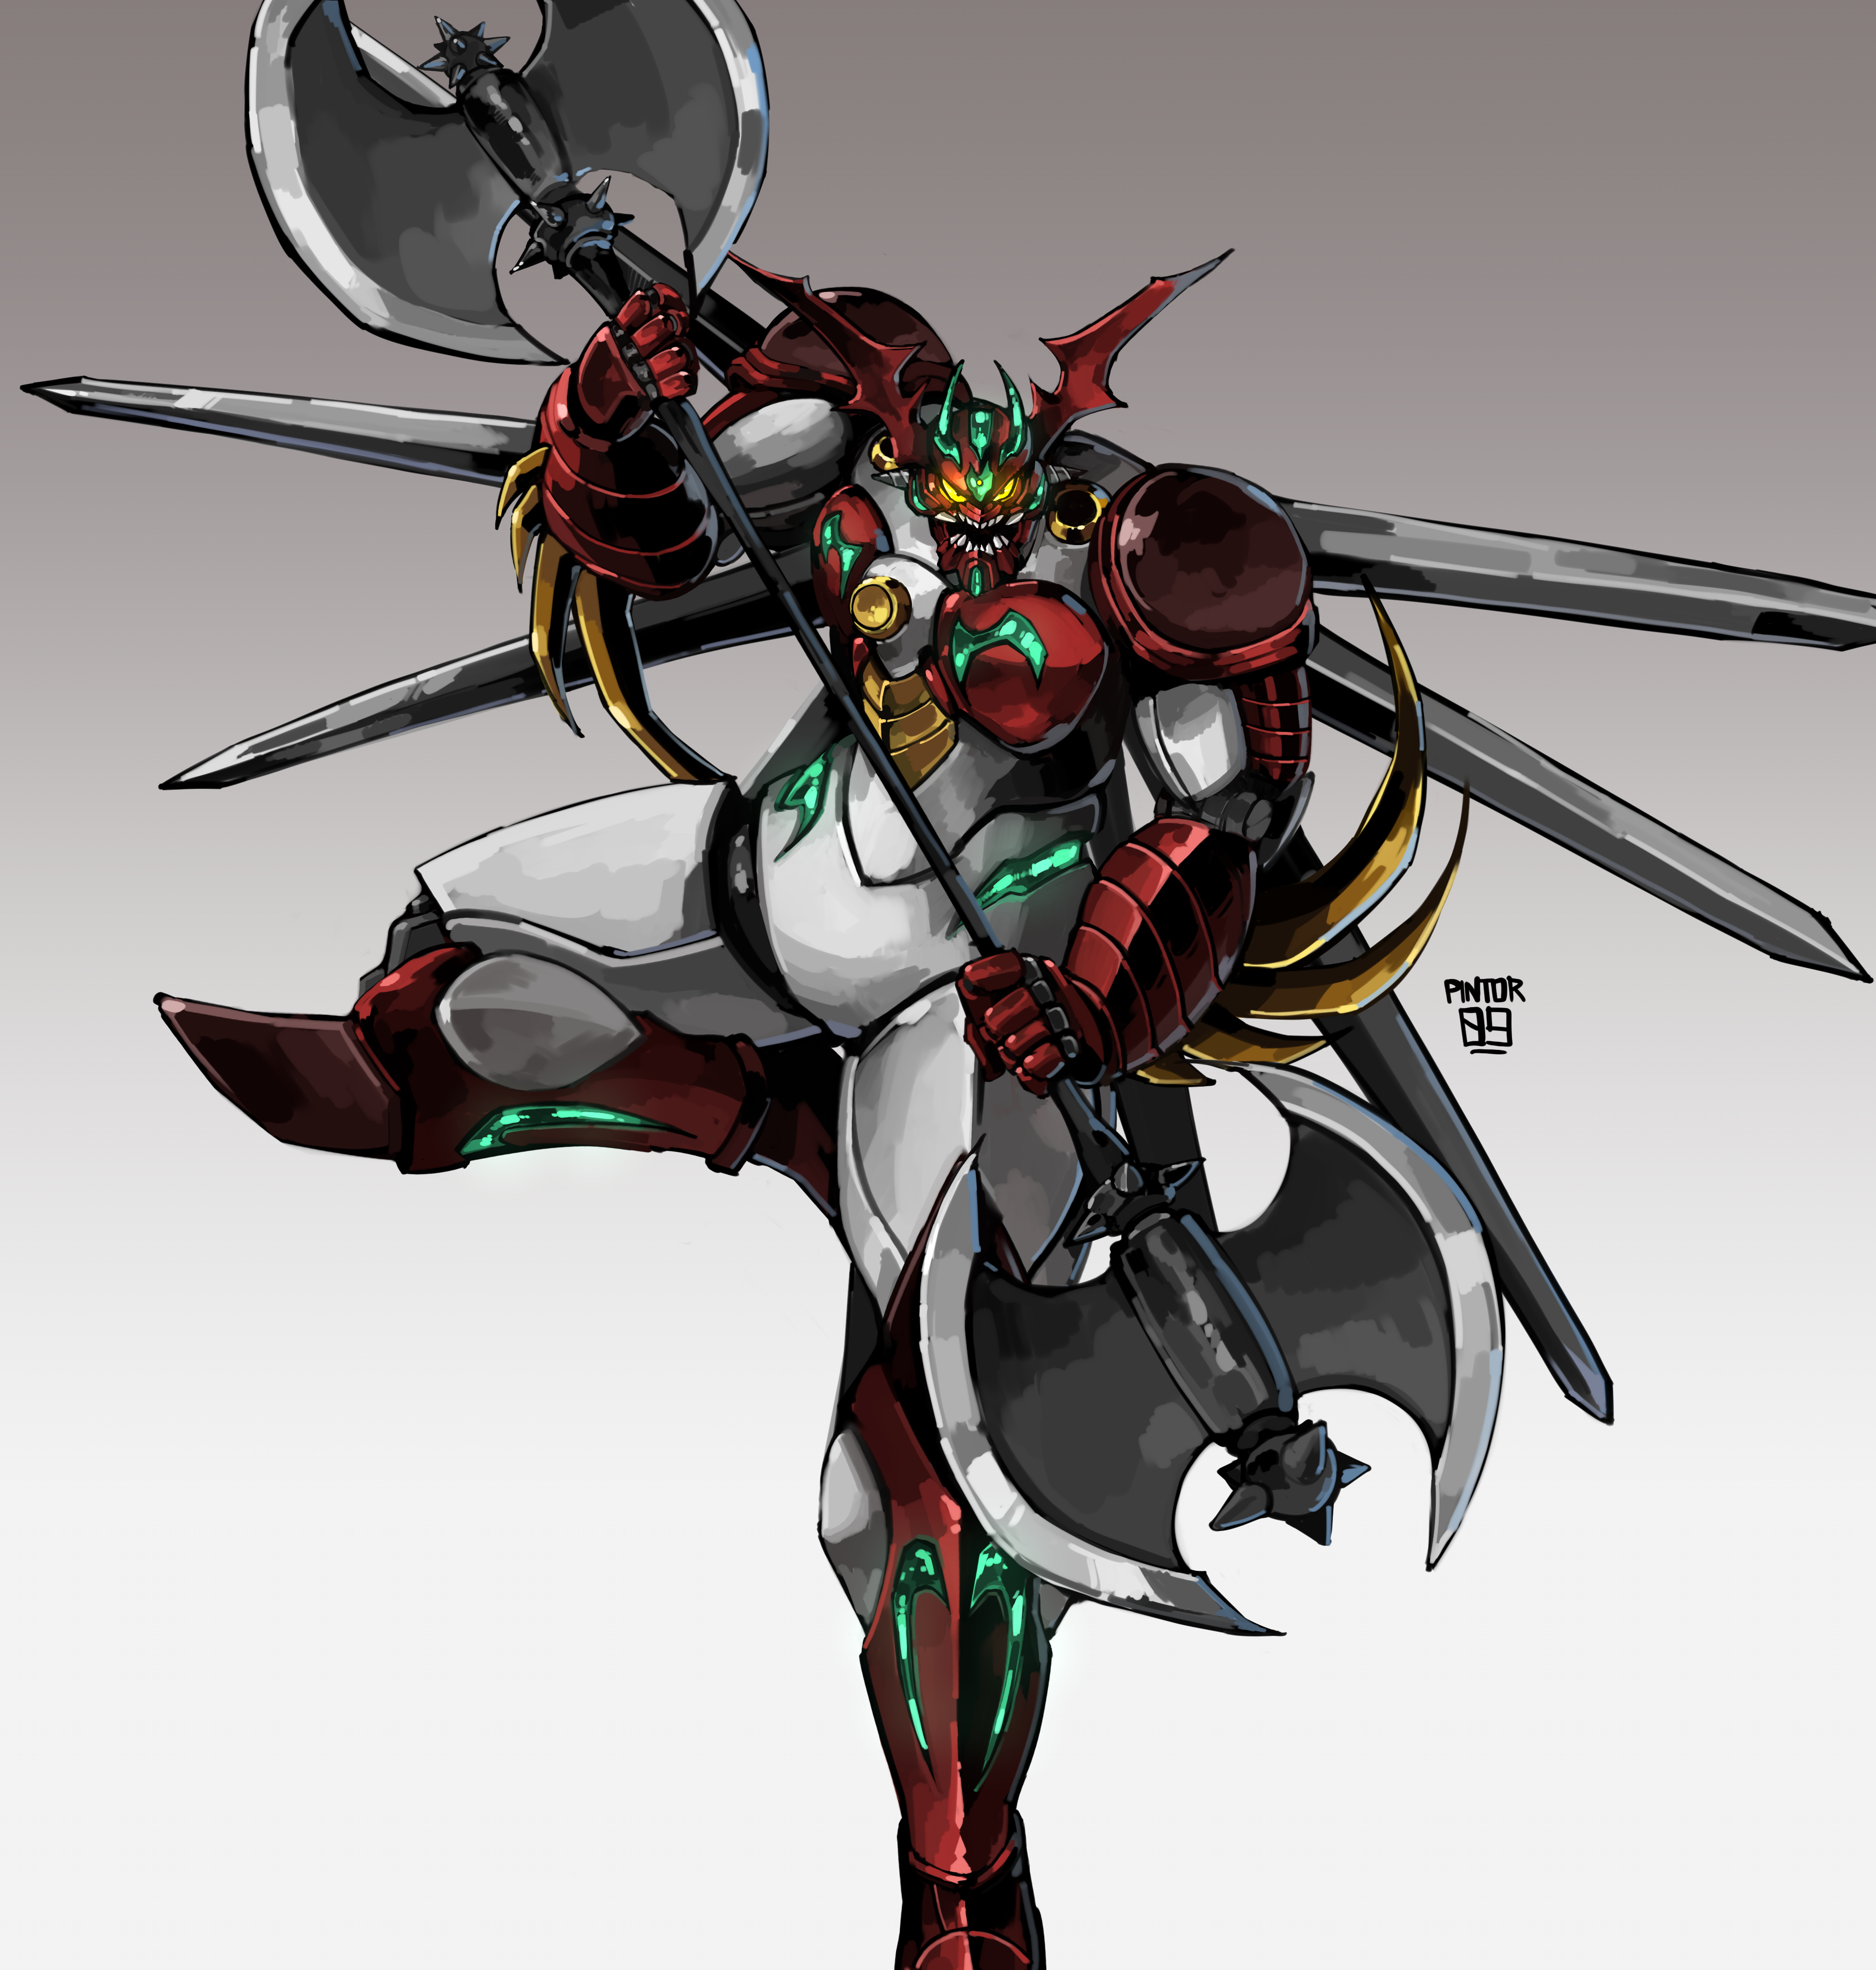 Anime Mech Getter Robo Getter Robo Arc Getter Arc Super Robot Wars Artwork Digital Art Fan Art 4000x4200